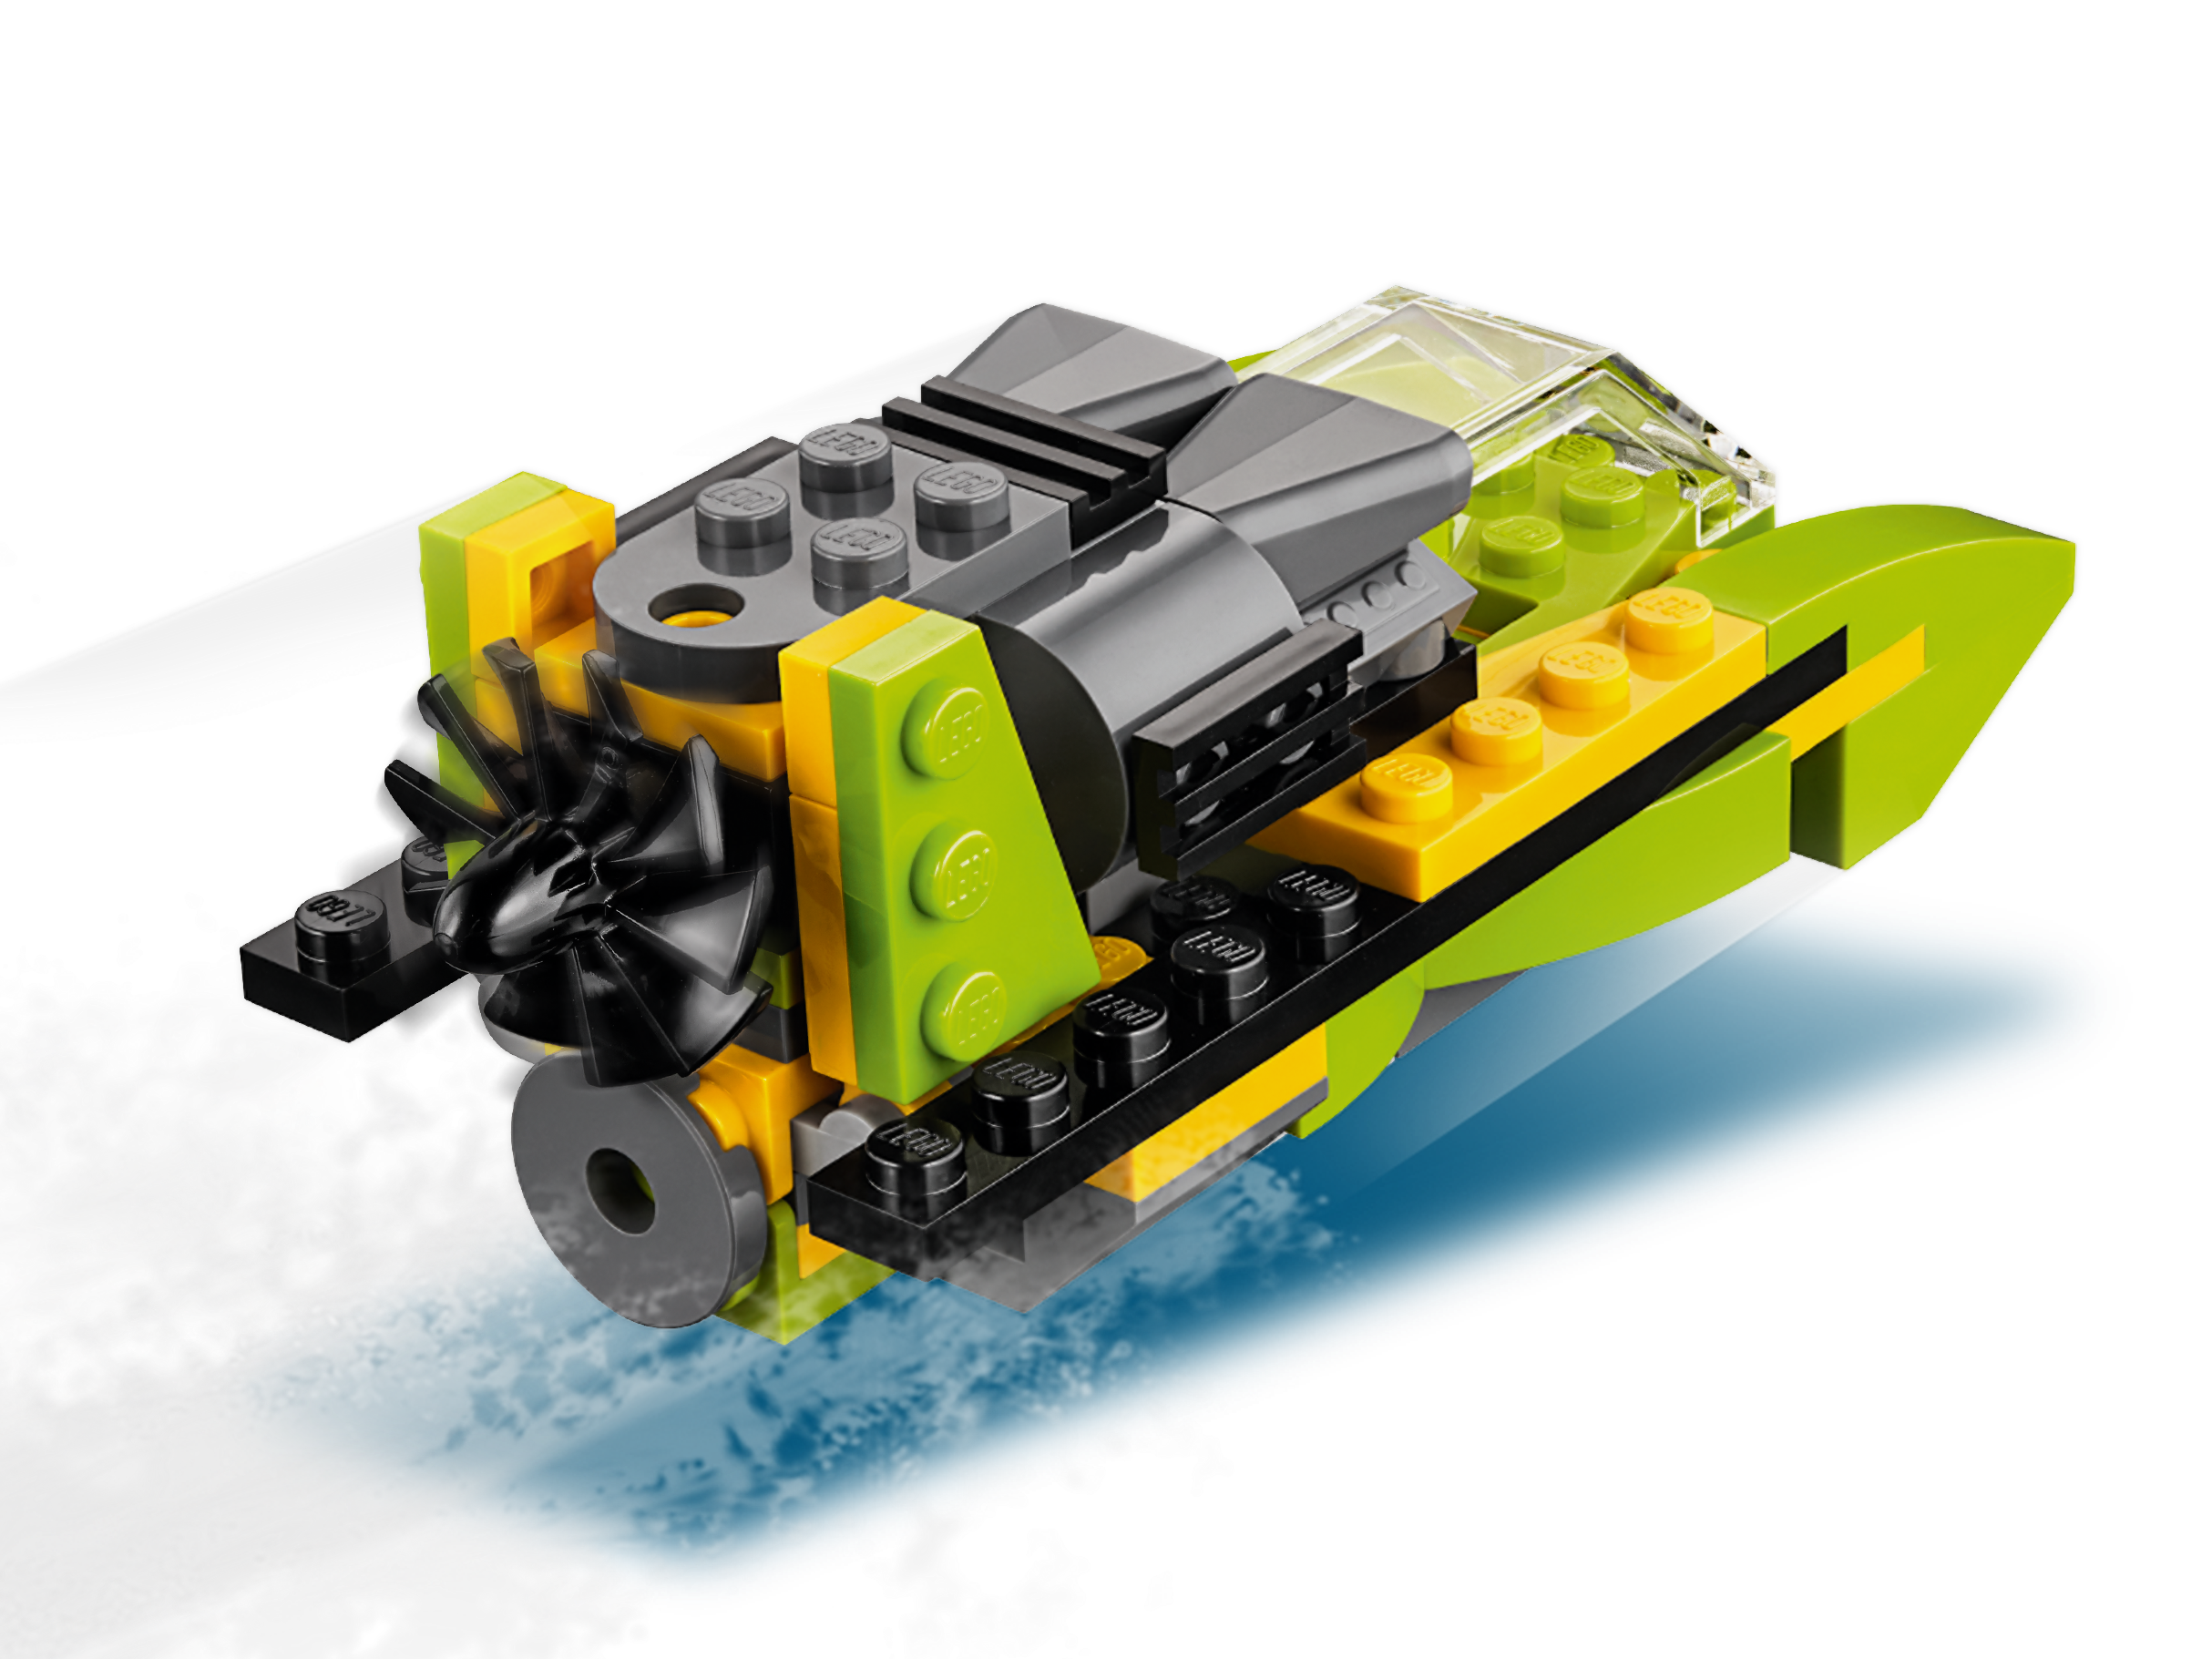 LEGO 31092 Creator Hubschrauber-Abenteuer 